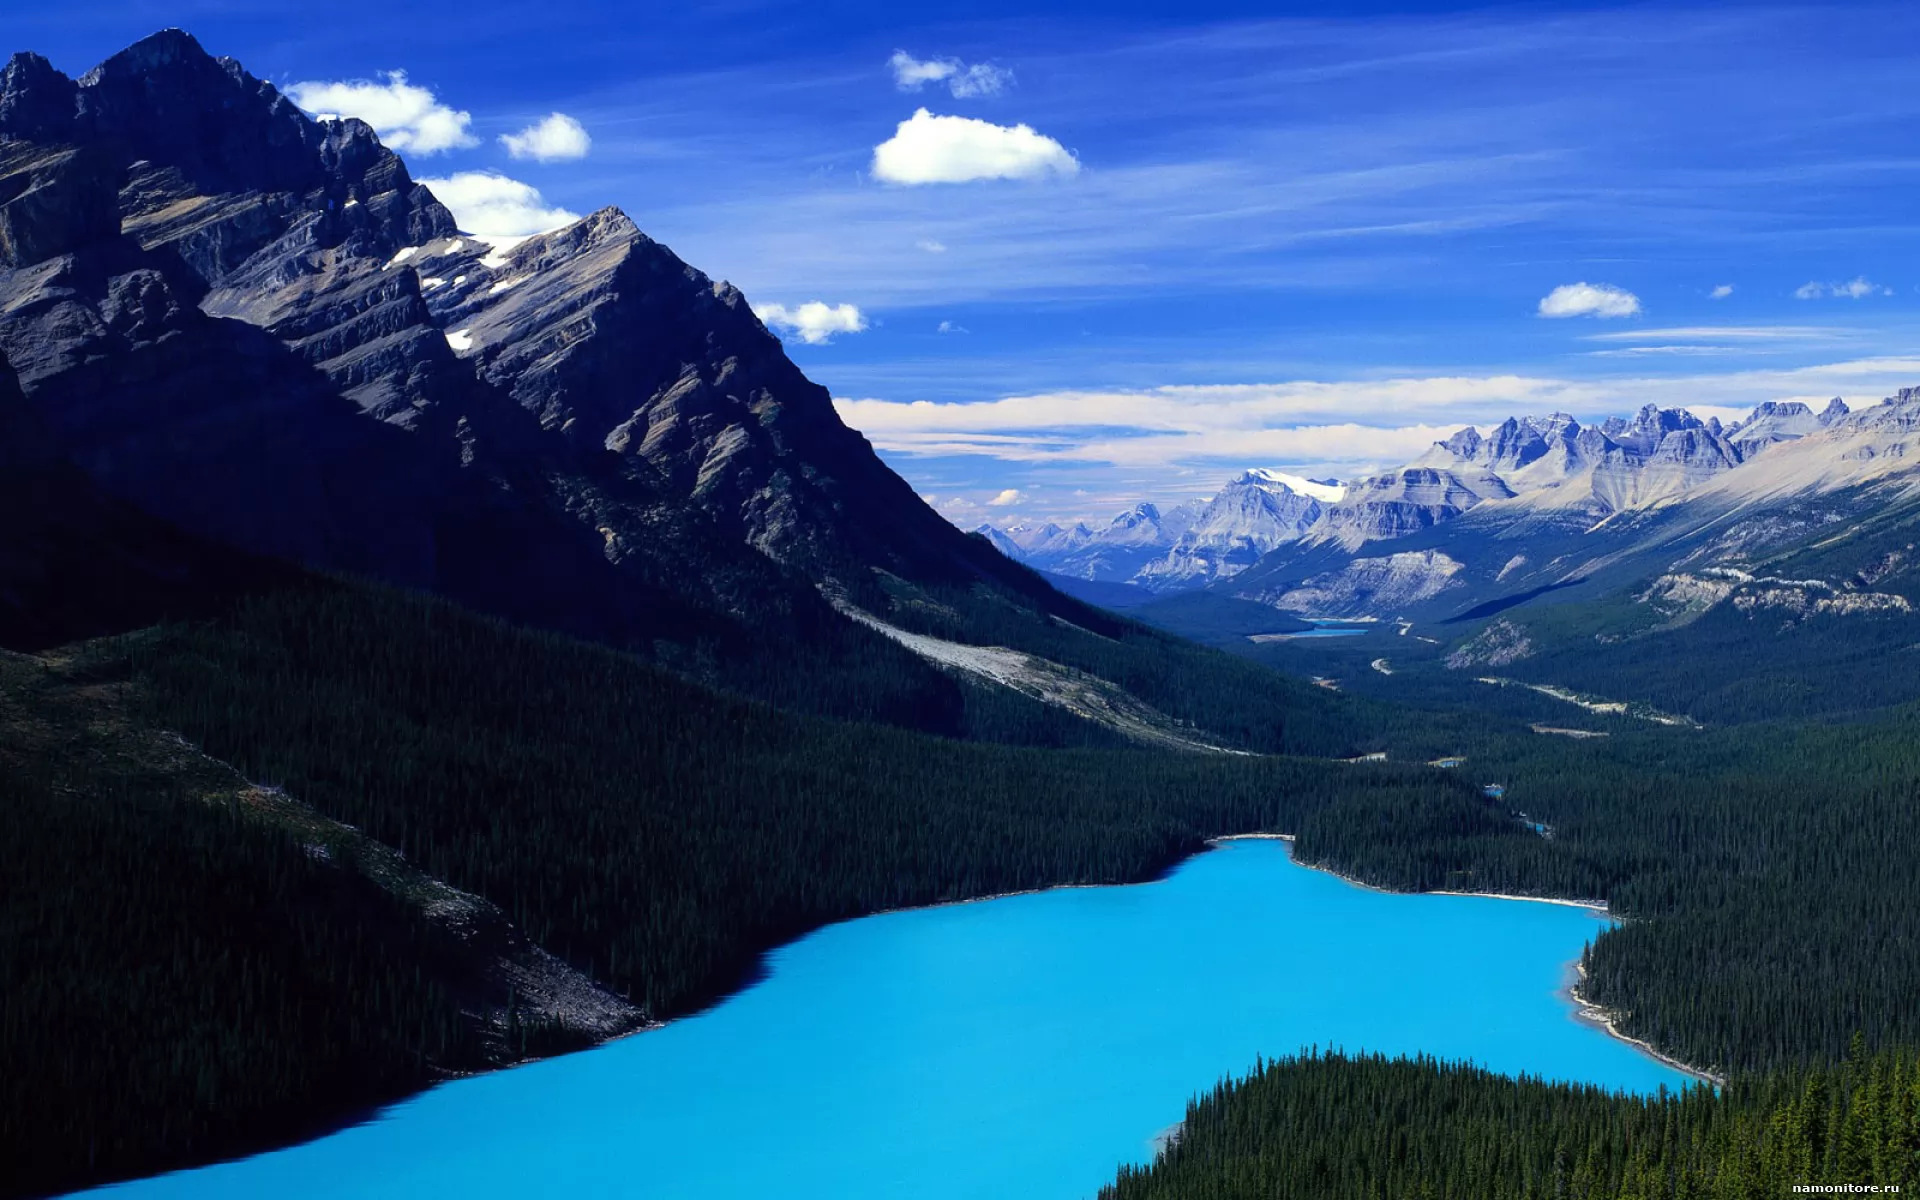 Лазоревые горы. Лазурные горы. Синие горы. Горы лазурного цвета. Фото природа горы Лазурные.